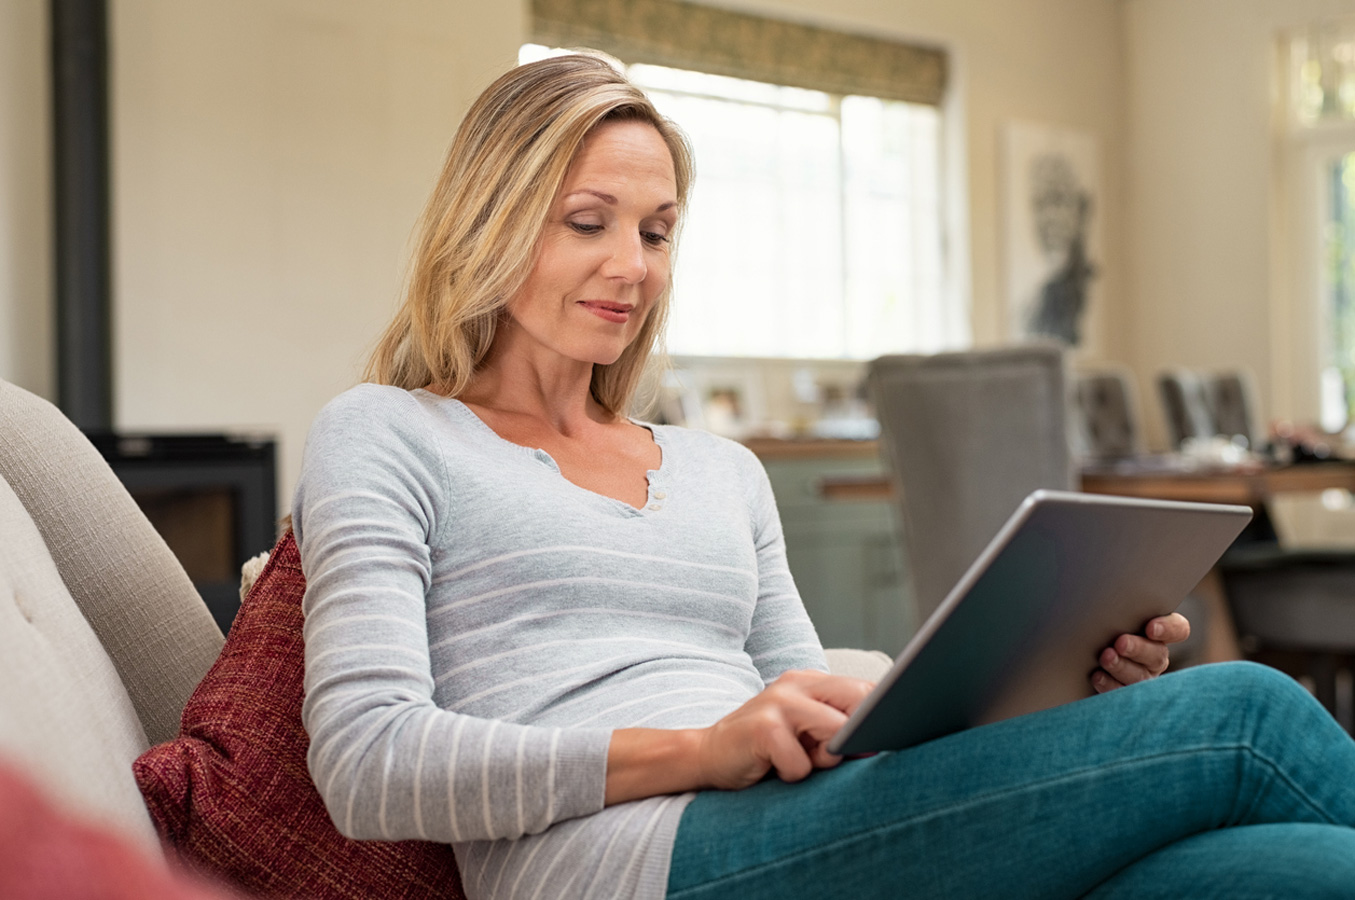 Unterjaehrige Anpassung Nebenkostenvorauszahlung: Frau sitzt auf der Couch und liest etwas auf einem Tablet.